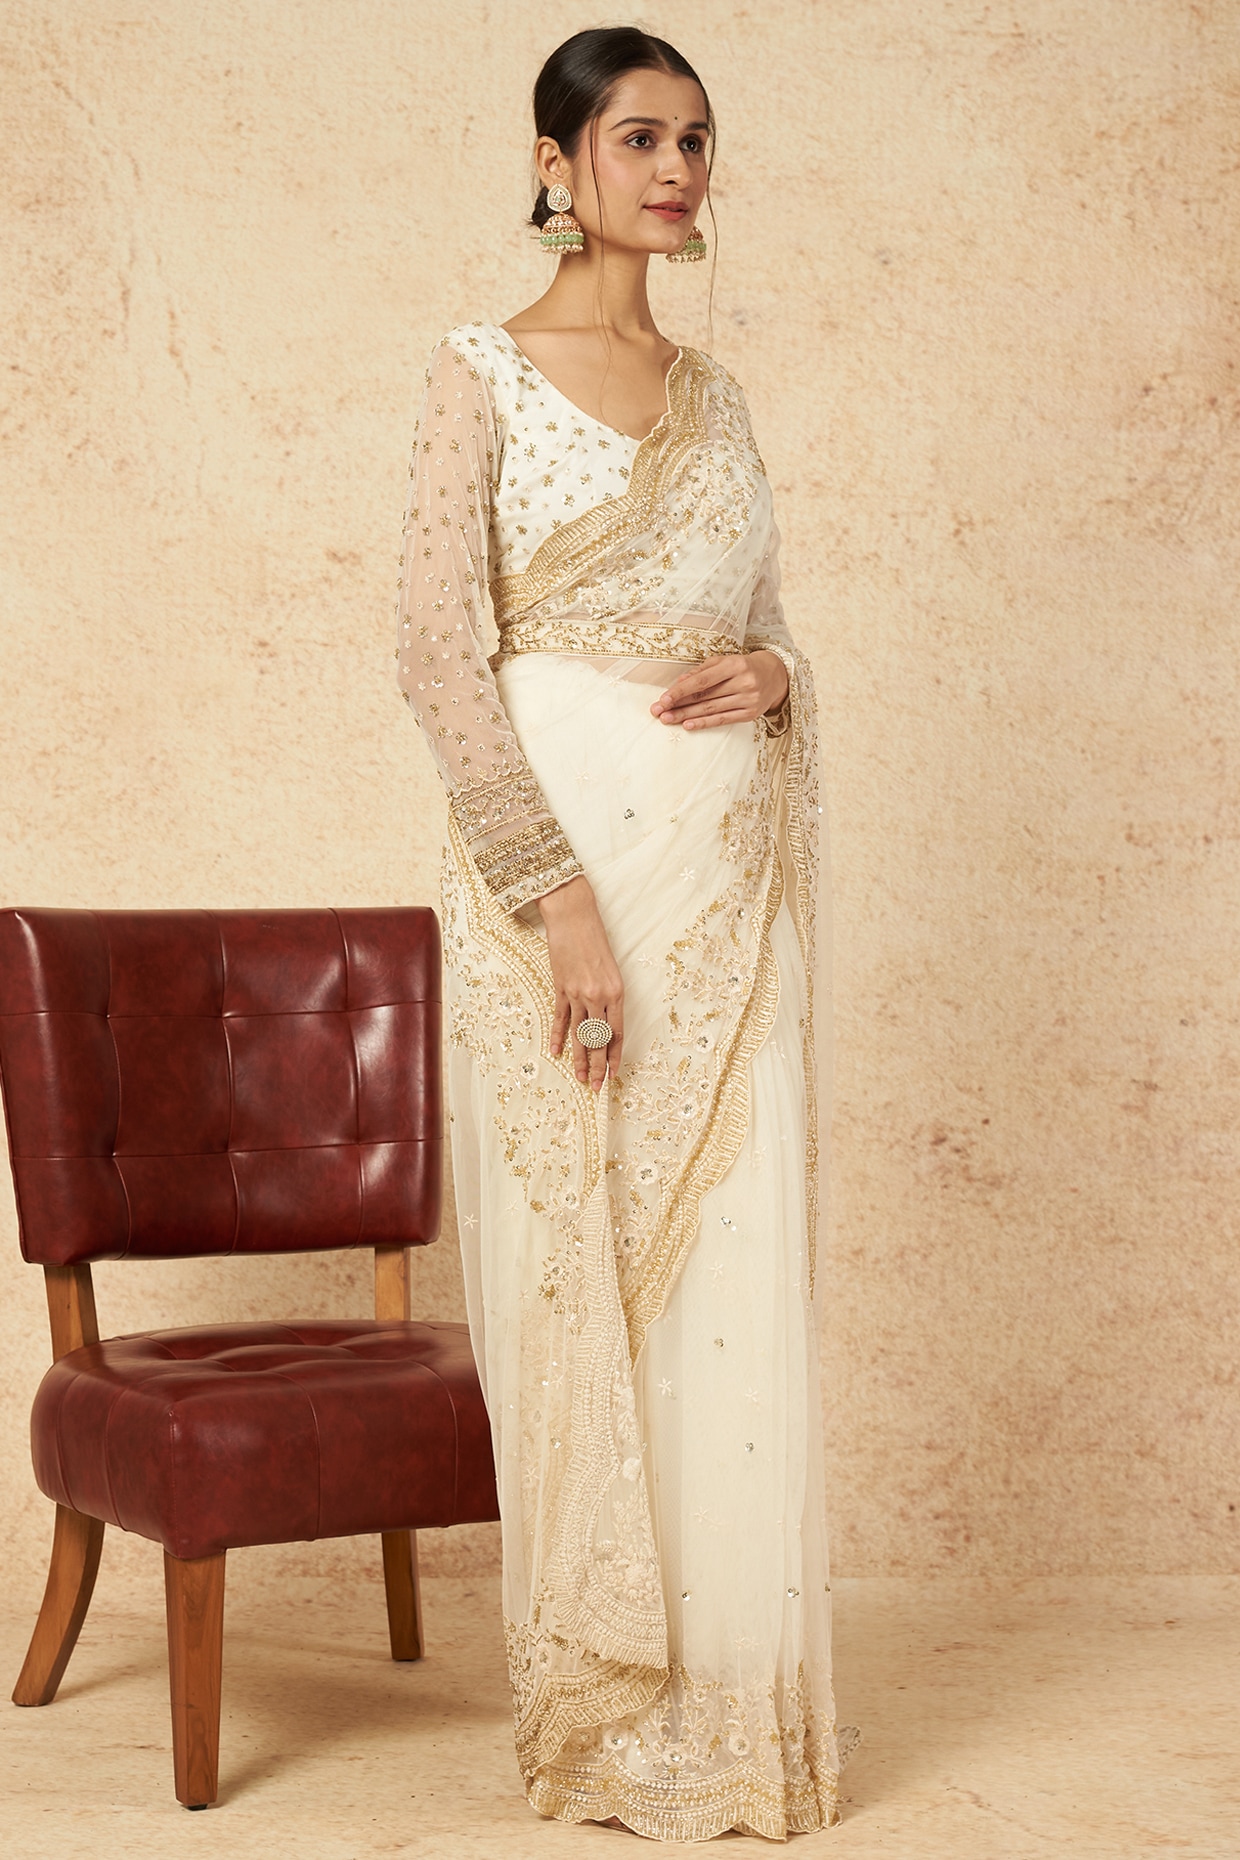 Off-White Net Saree Set Design by Astha Narang at Pernia's Pop Up